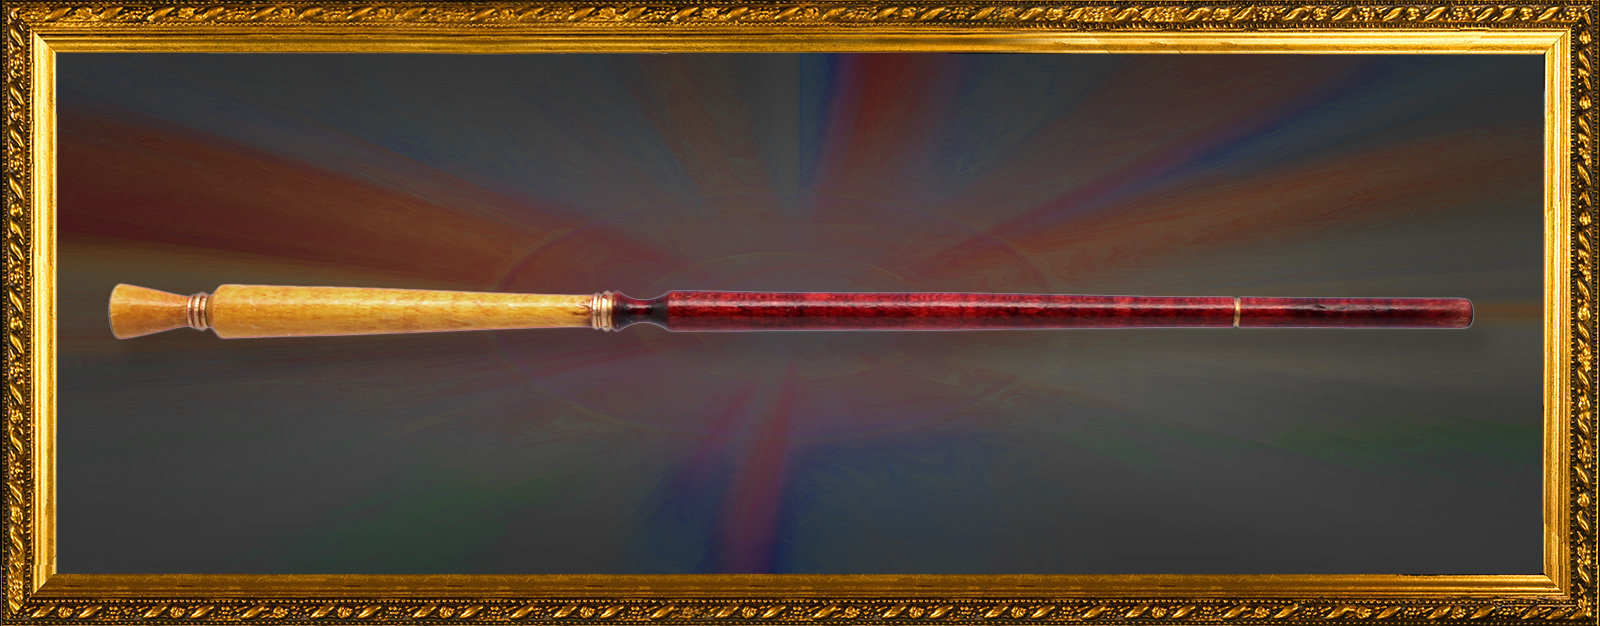 rembrandt magic wand